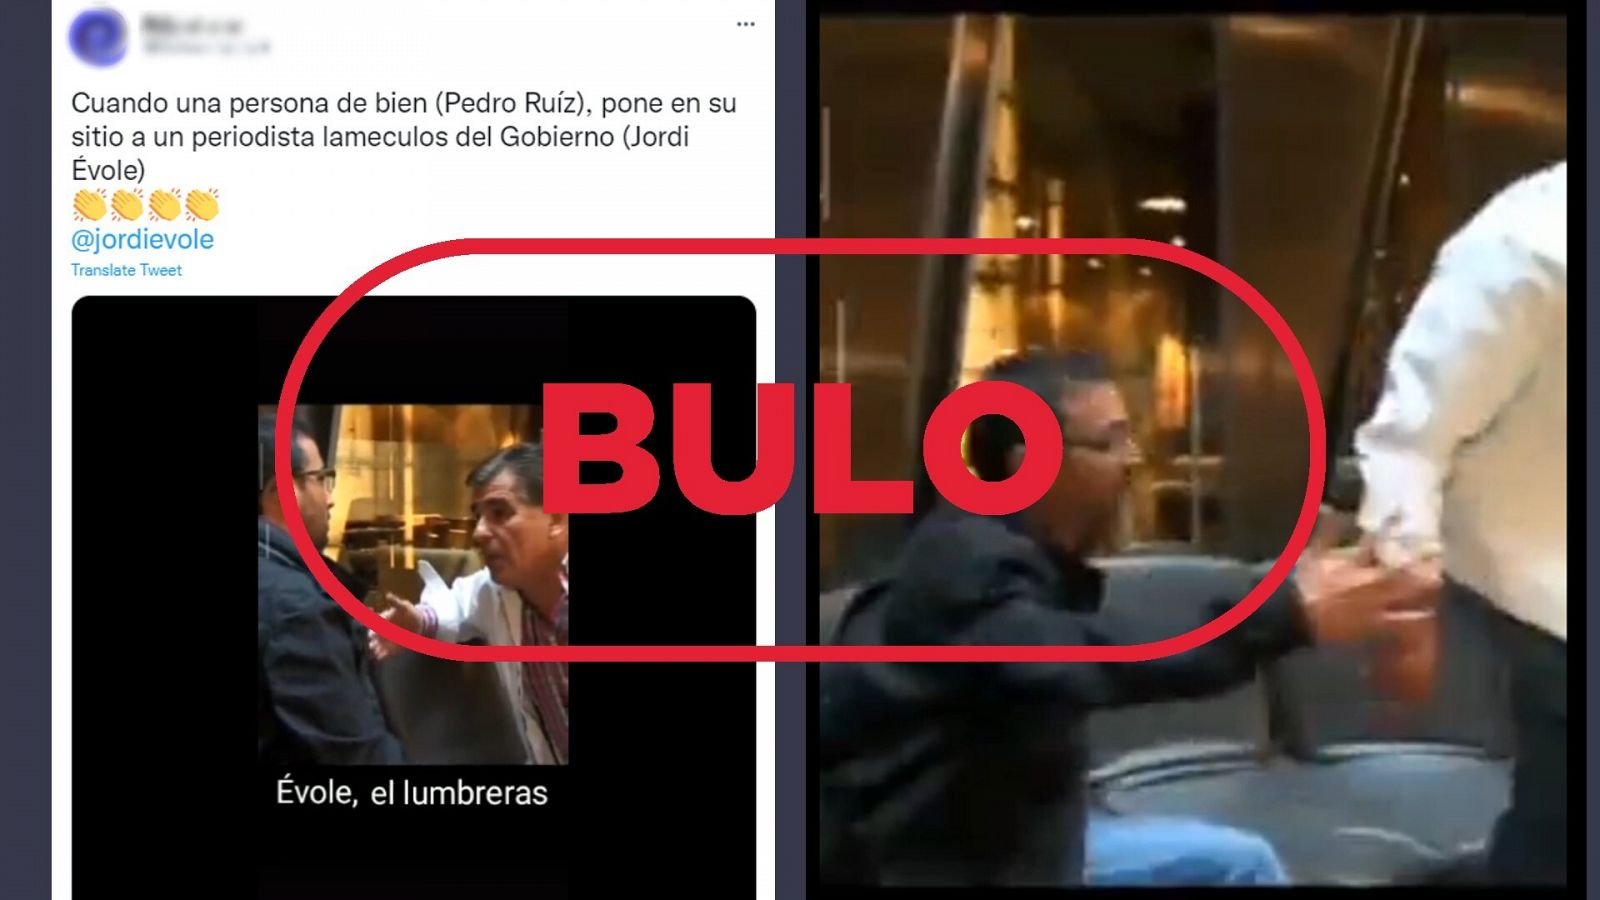 Este vídeo de Jordi Évole y Pedro Ruiz discutiendo no es real, es una broma organizada por ambos en 2009. Capturas del bulo y del vídeo en el que supuestamente discuten. Con el sello bulo.